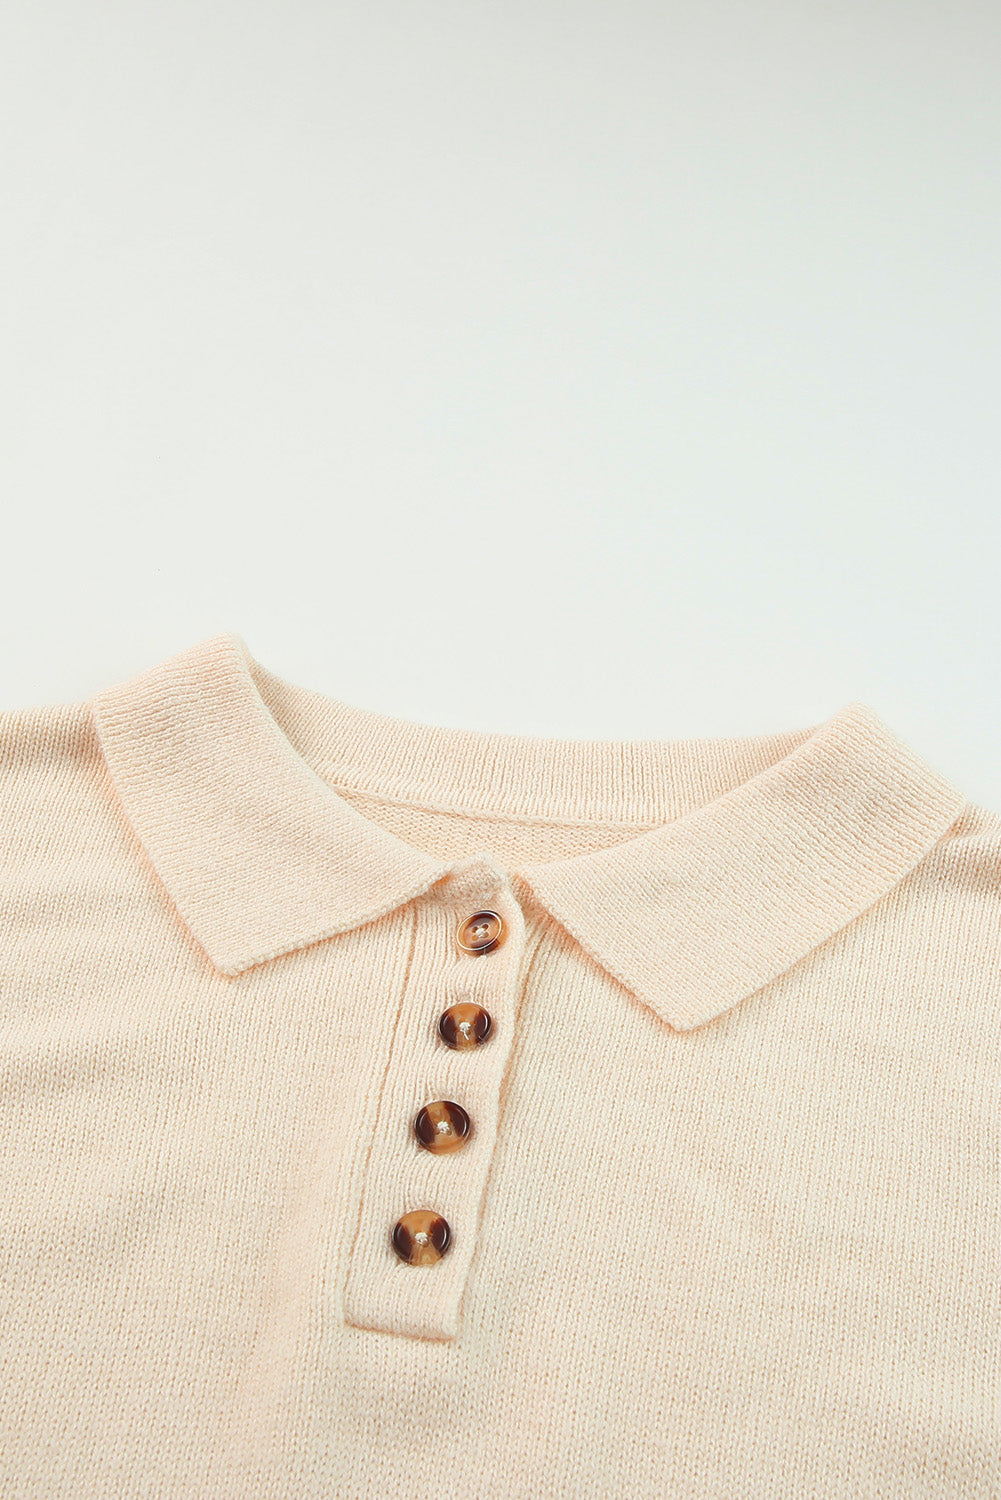 Pletena mini džemper haljina boje marelice s polo ovratnikom